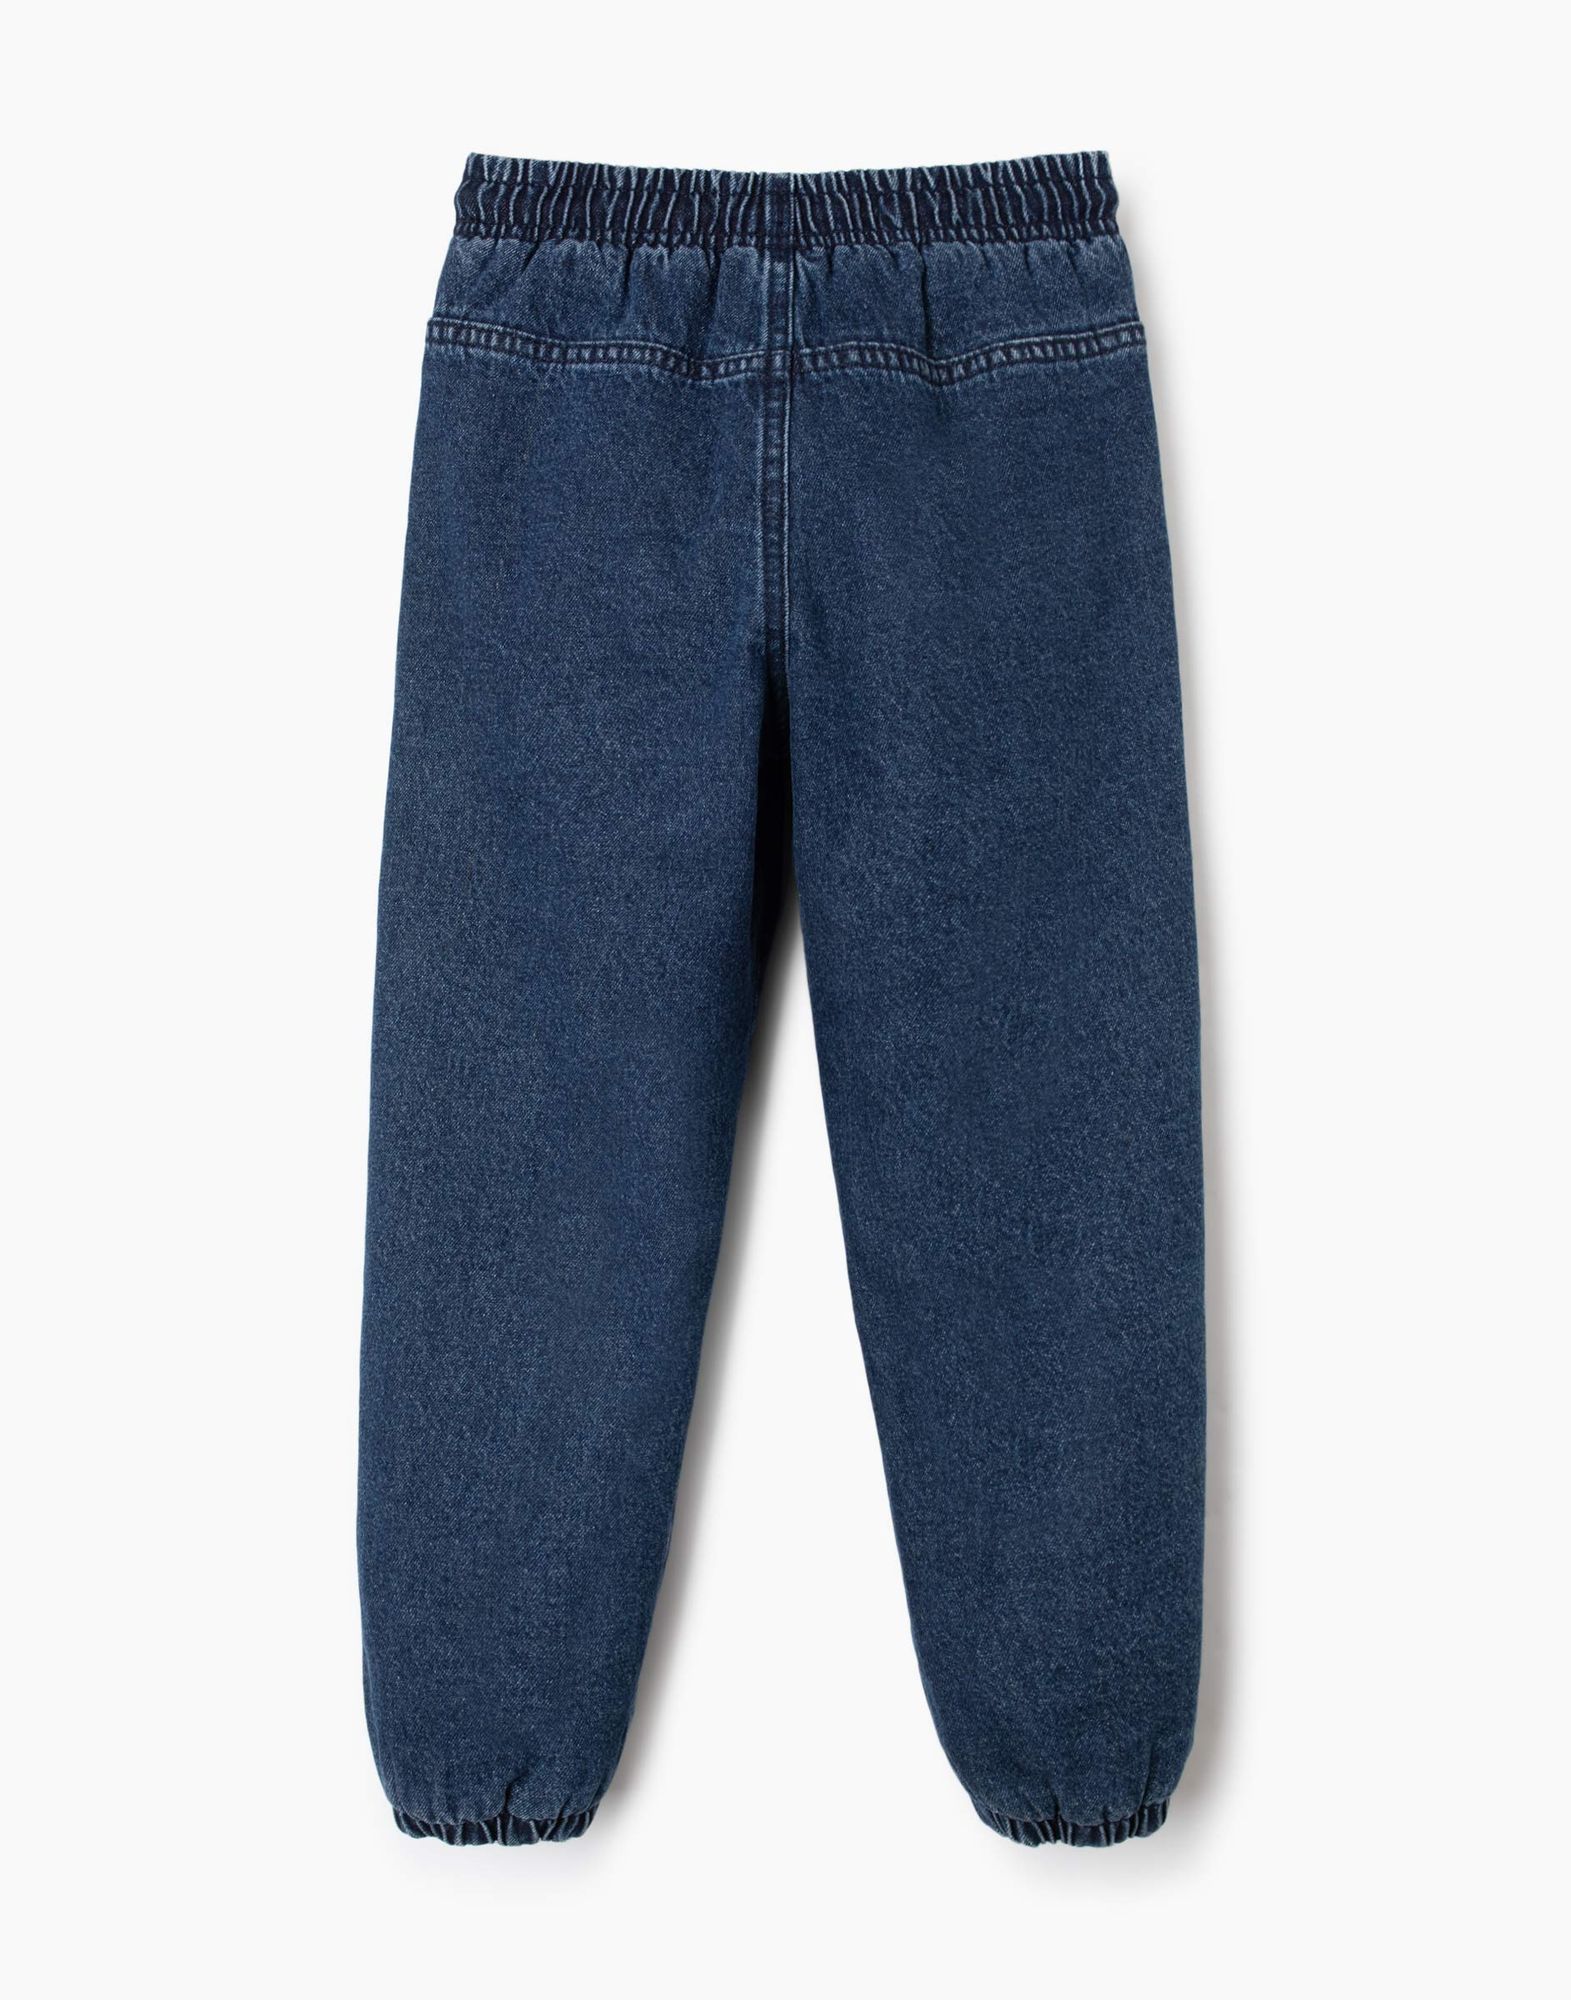 Утеплённые джинсы Jogger для мальчика -2